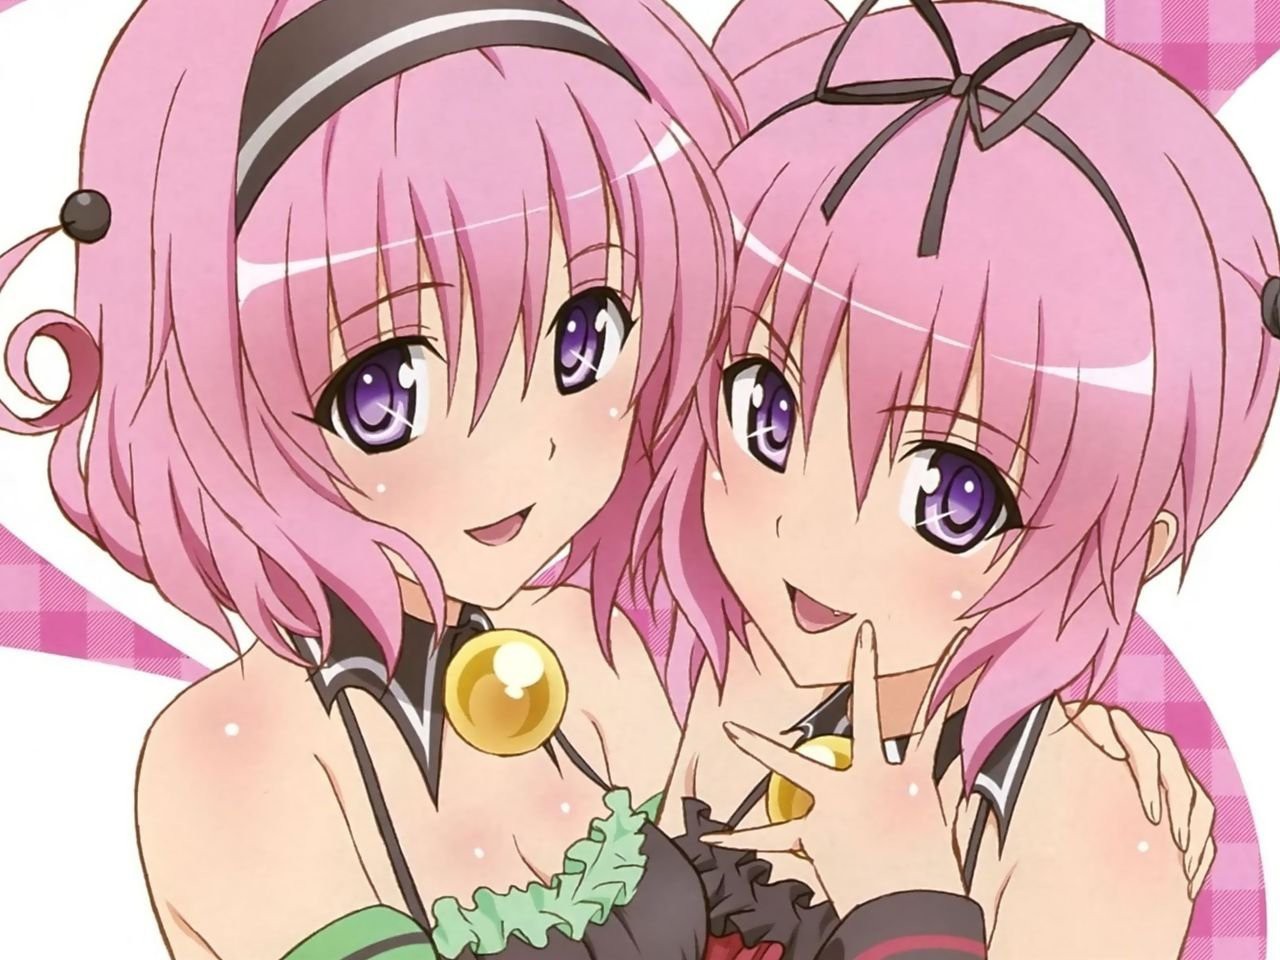 Cặp chị em gái anime: Hãy cùng ngắm nhìn sự kết hợp tinh tế giữa hai chị em gái anime đáng yêu trong hình ảnh này. Bạn sẽ rất thích thú khi nhìn thấy họ cùng hưởng ứng và trao tình cảm cho nhau.